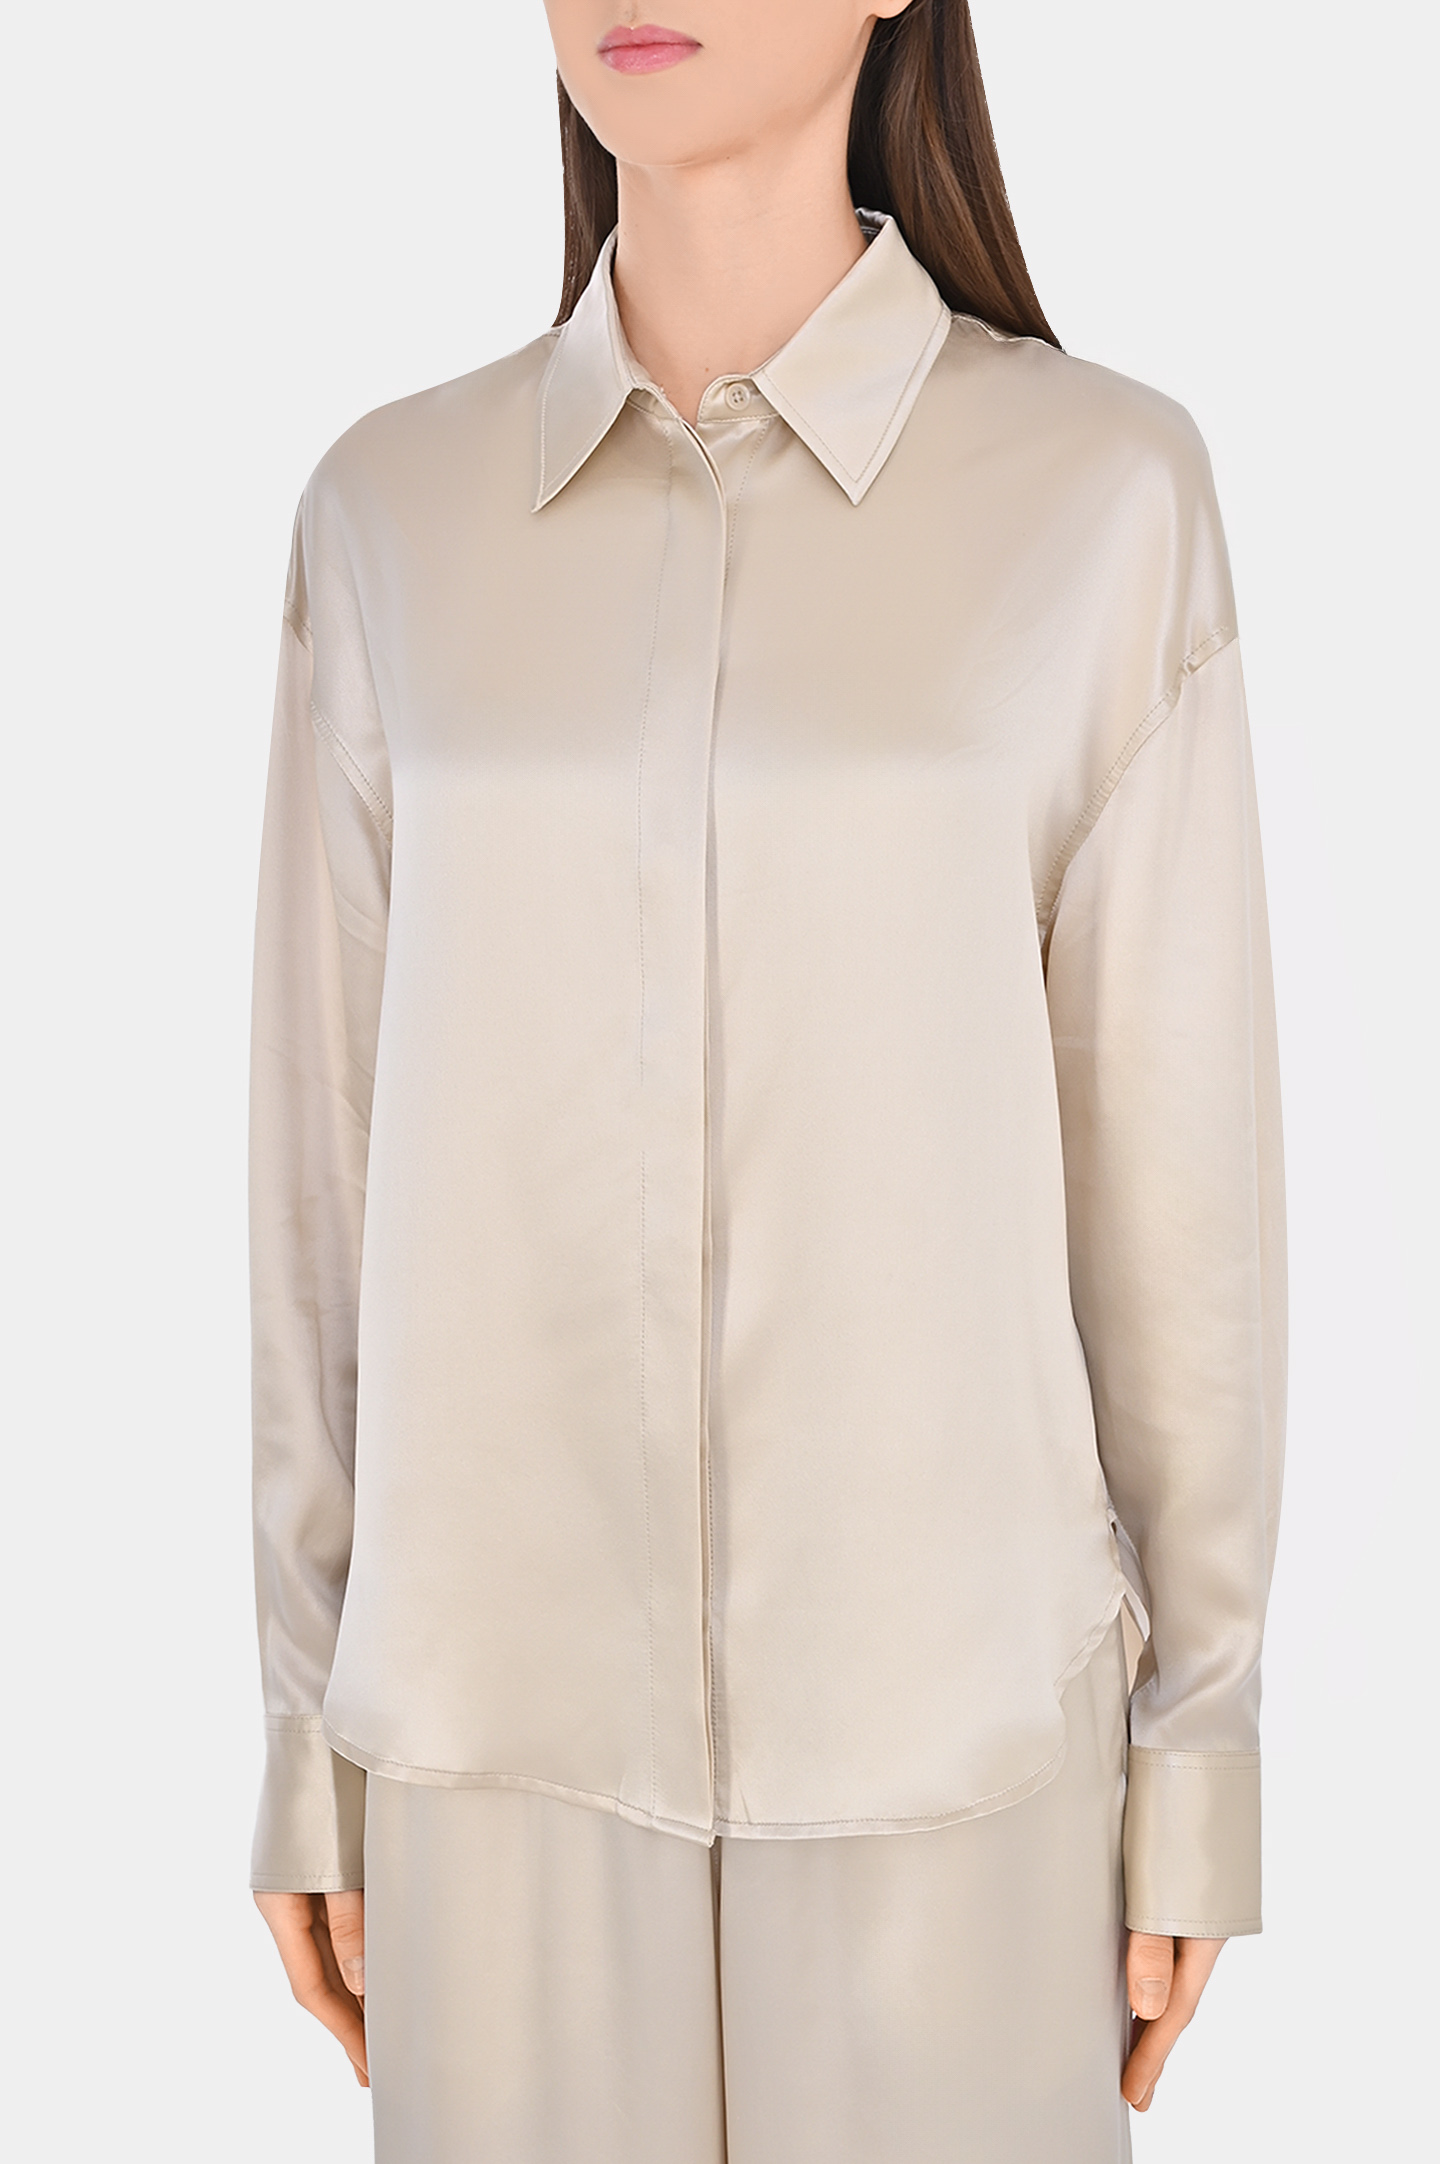 Блуза-рубашки из шелка JACOB LEE WSS016SS24PW, цвет: Светло-бежевый, Женский